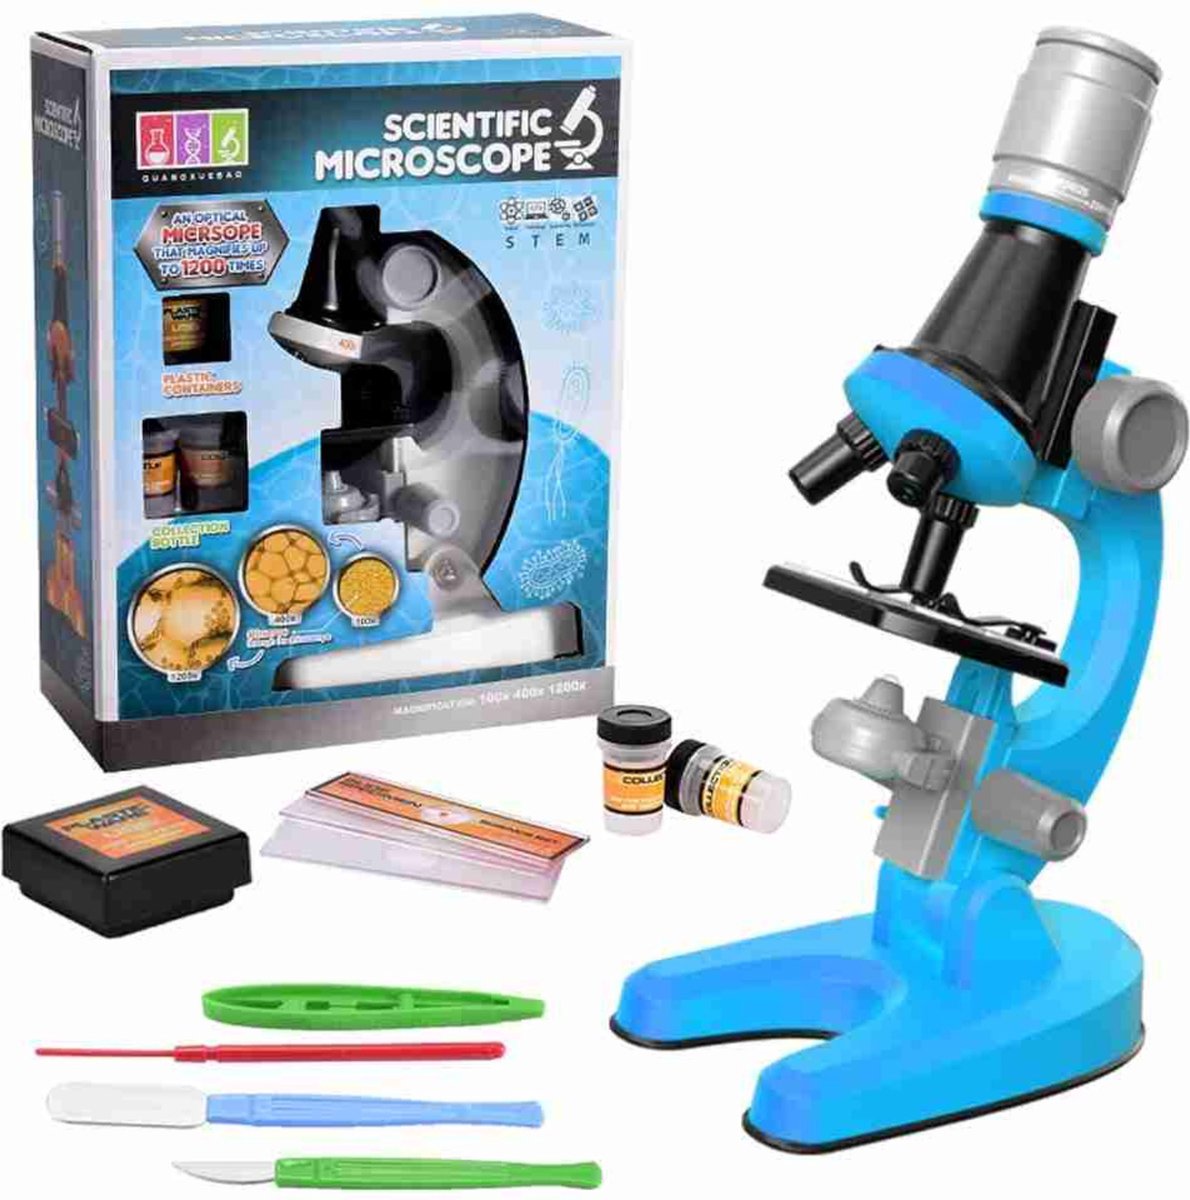 Hoobi® Microscoop Voor Kinderen - Junior Microscoop - Veel Accessoires - Biologisch - Wetenschap - Educatief - Tot X1200 - LED Verlichting - Kinder Speelgoed - Junior - Blauw